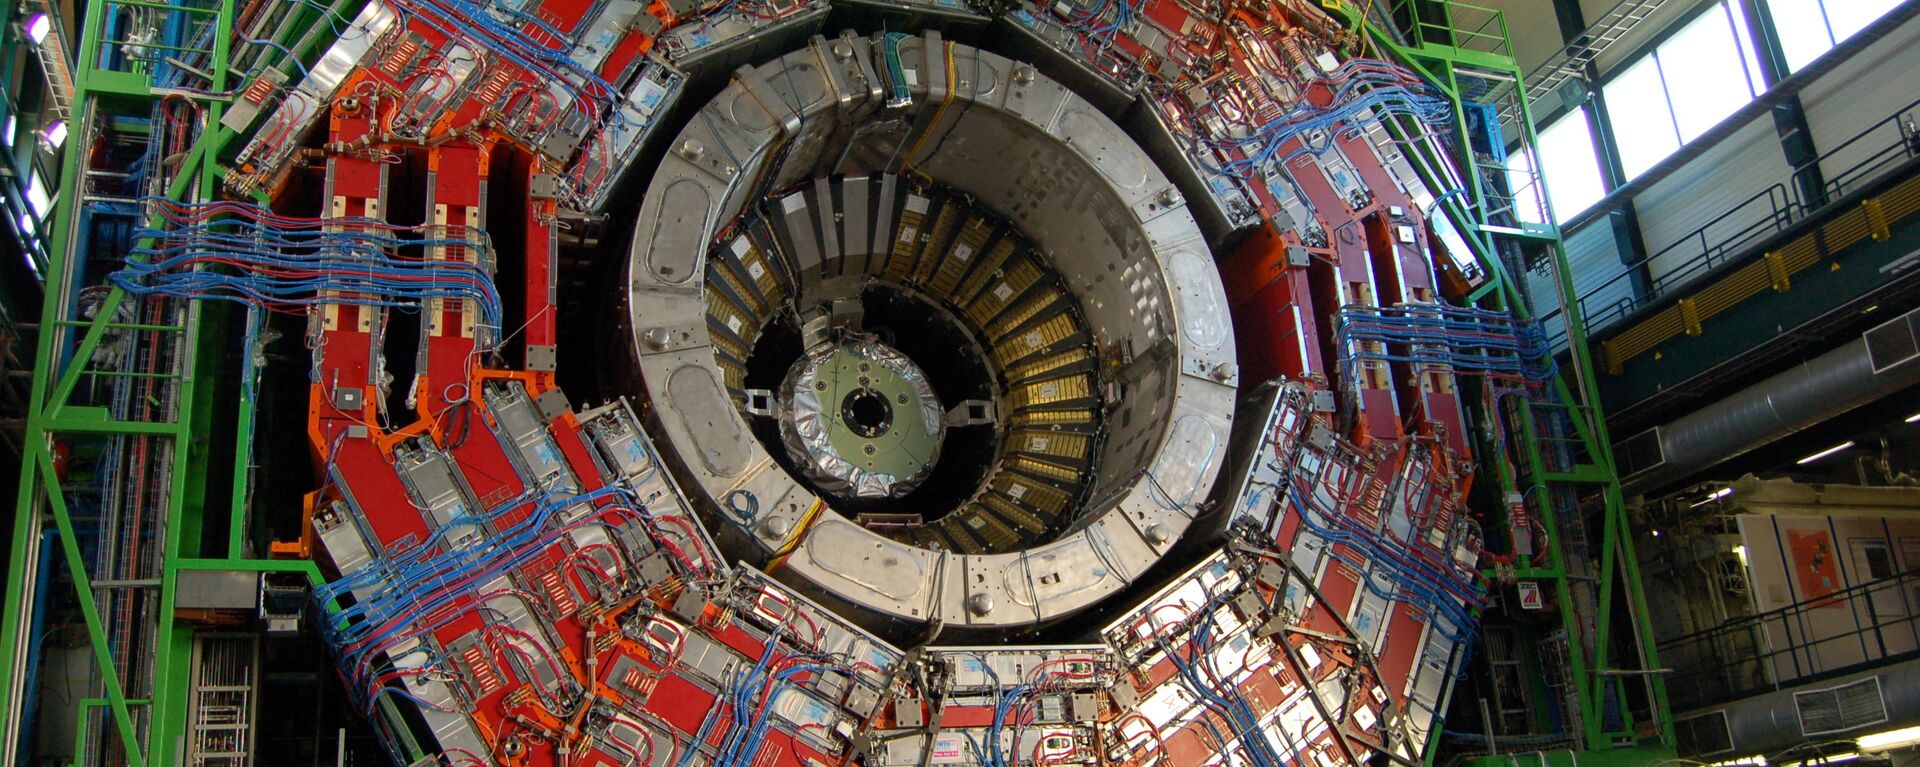 Lielais hadronu kolaideris. Foto no arhīva - Sputnik Latvija, 1920, 01.05.2016